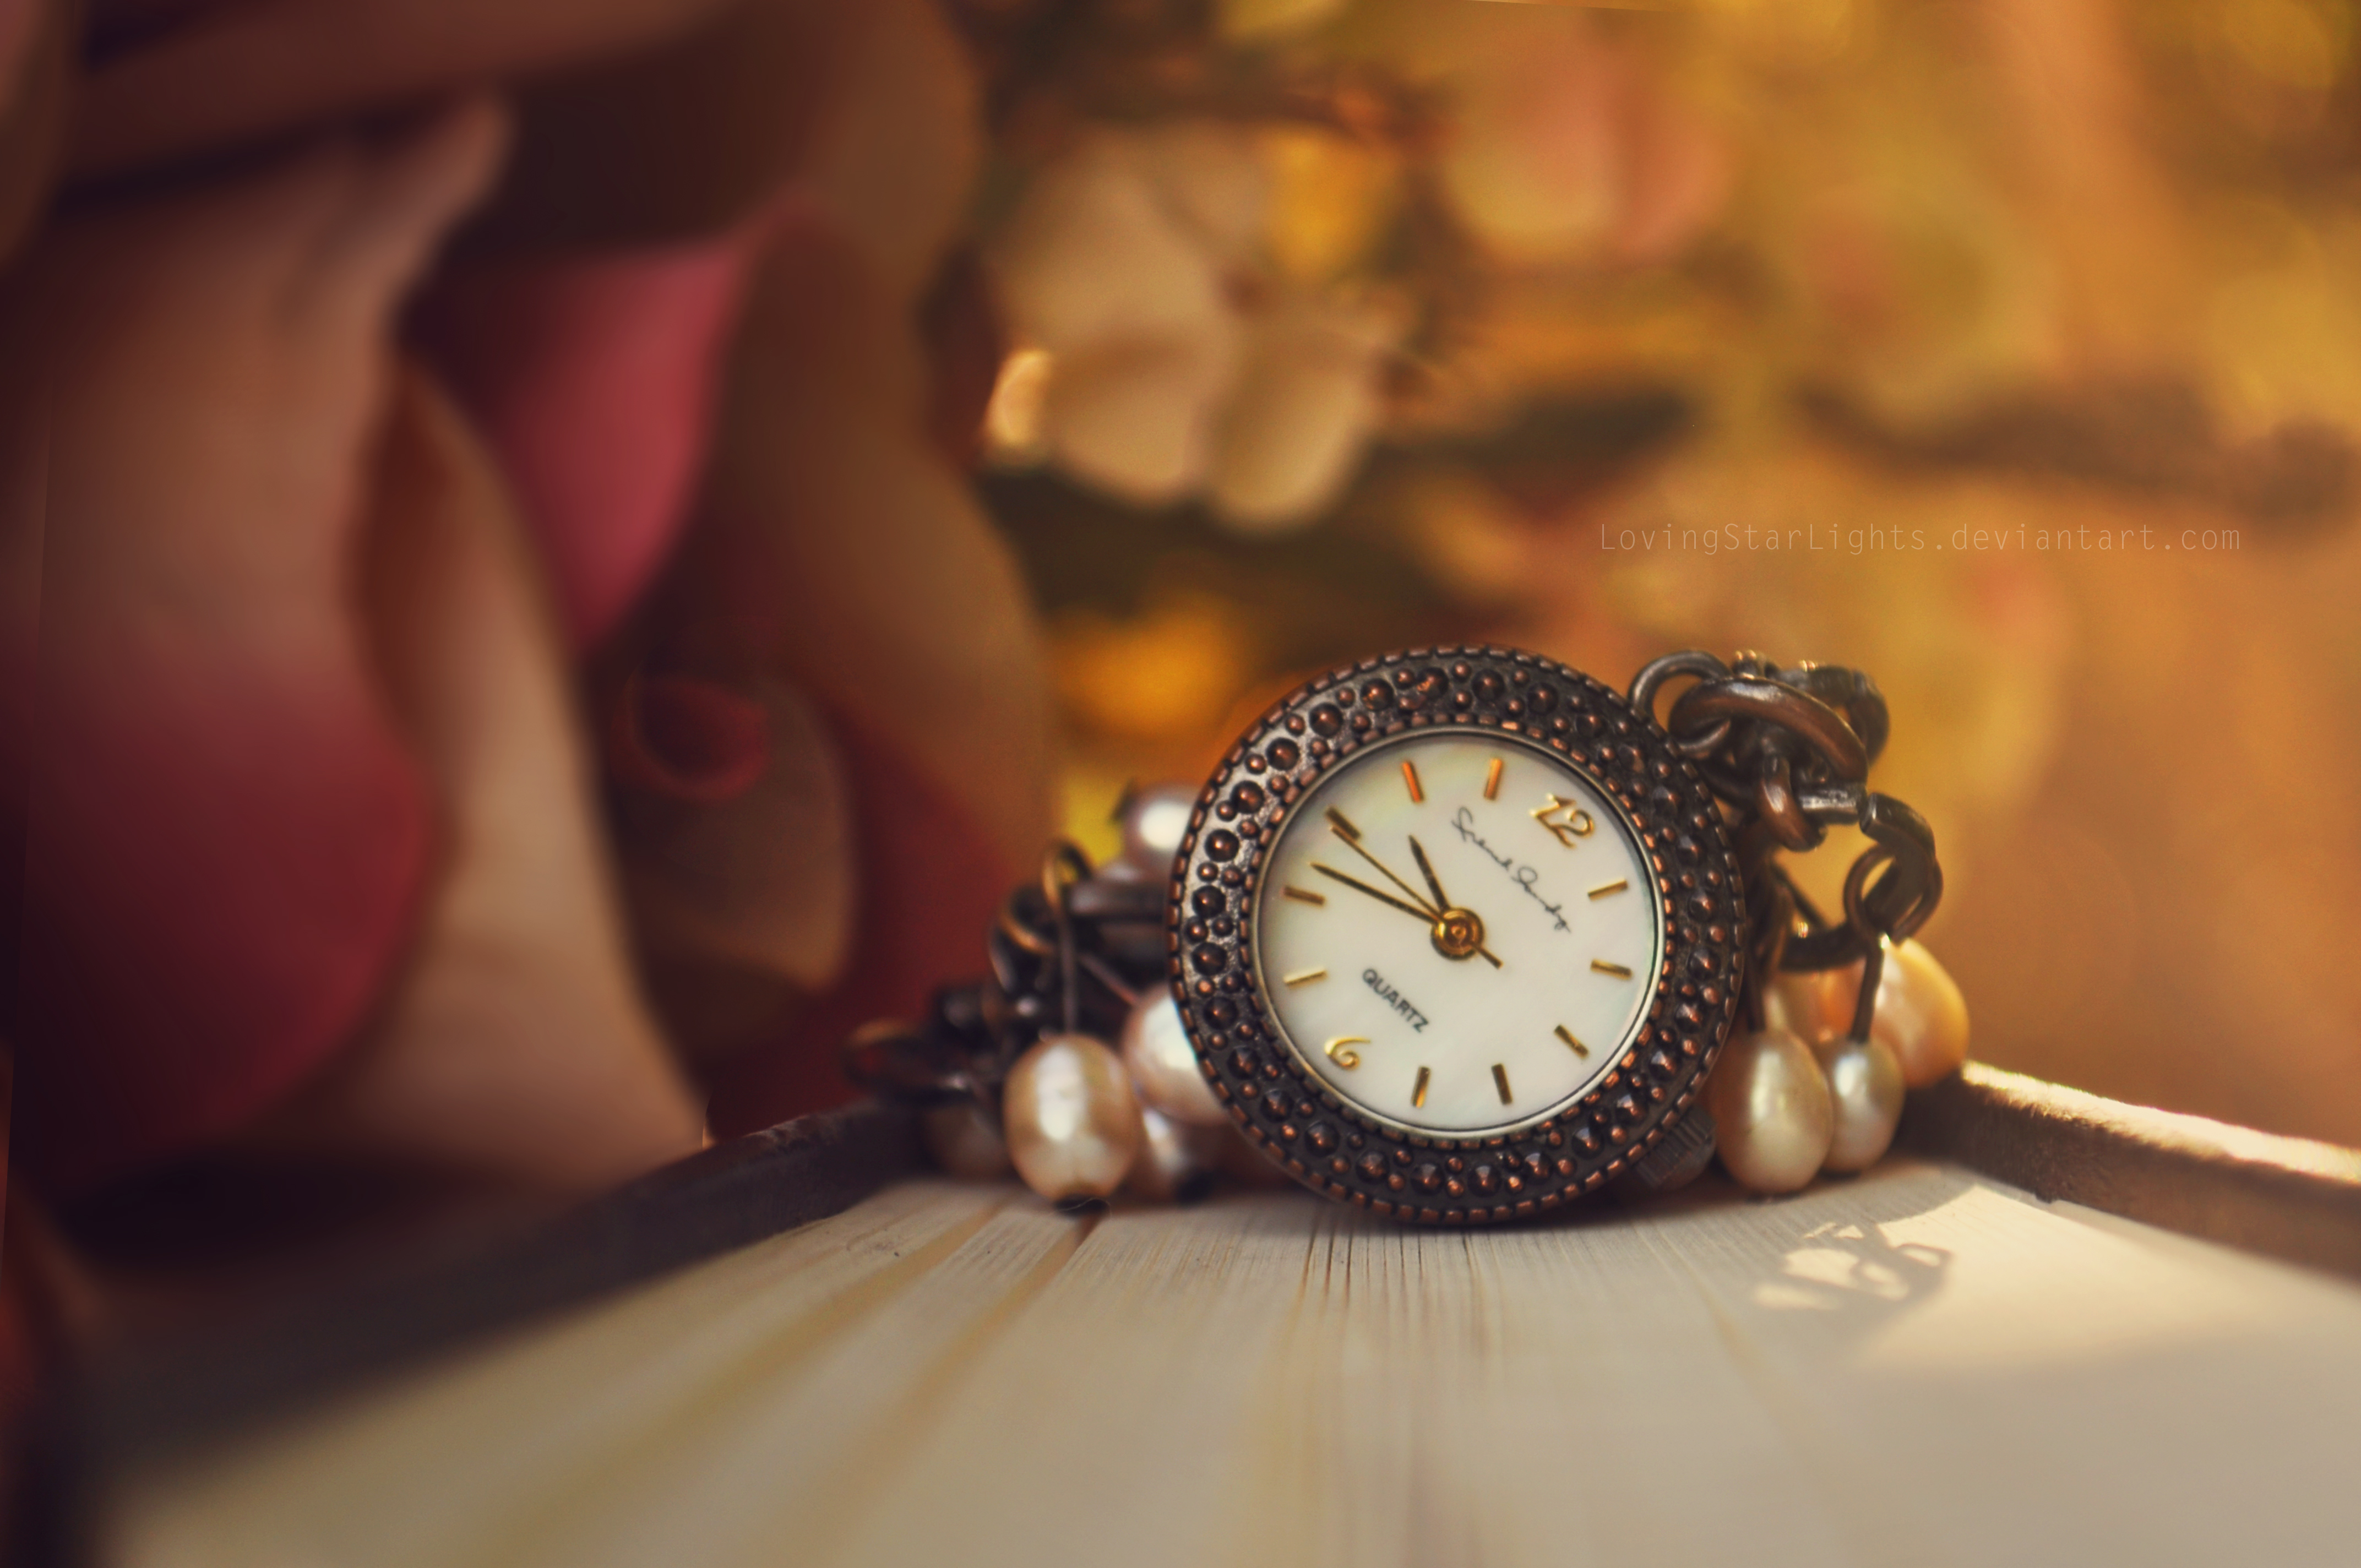 Фото обоев на часы. Красивые часы. Фон с часами. Обои на часы. Красивый фон с часами.